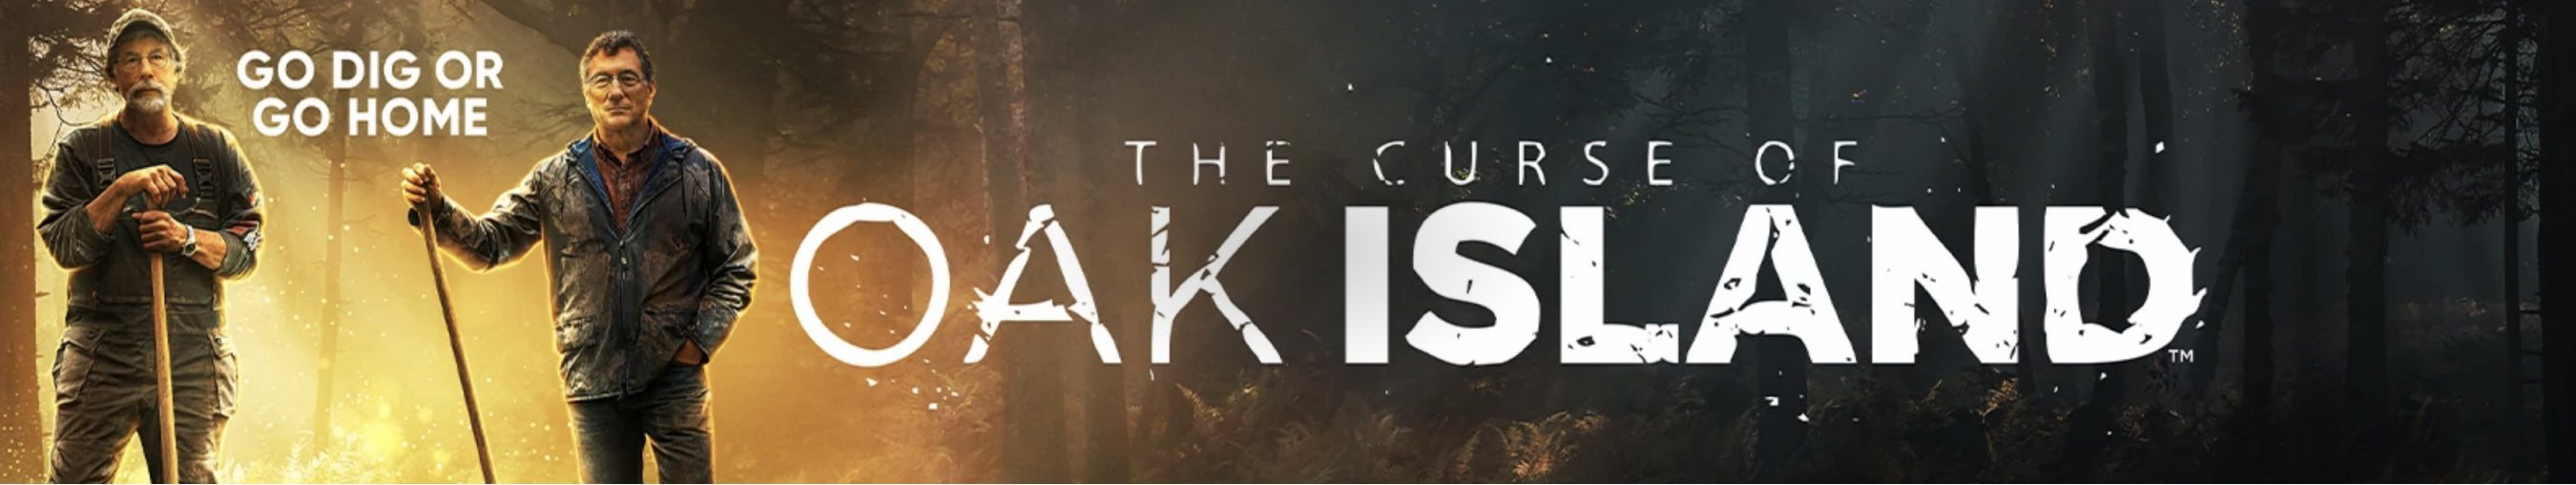 The Curse of Oak Island-mobile